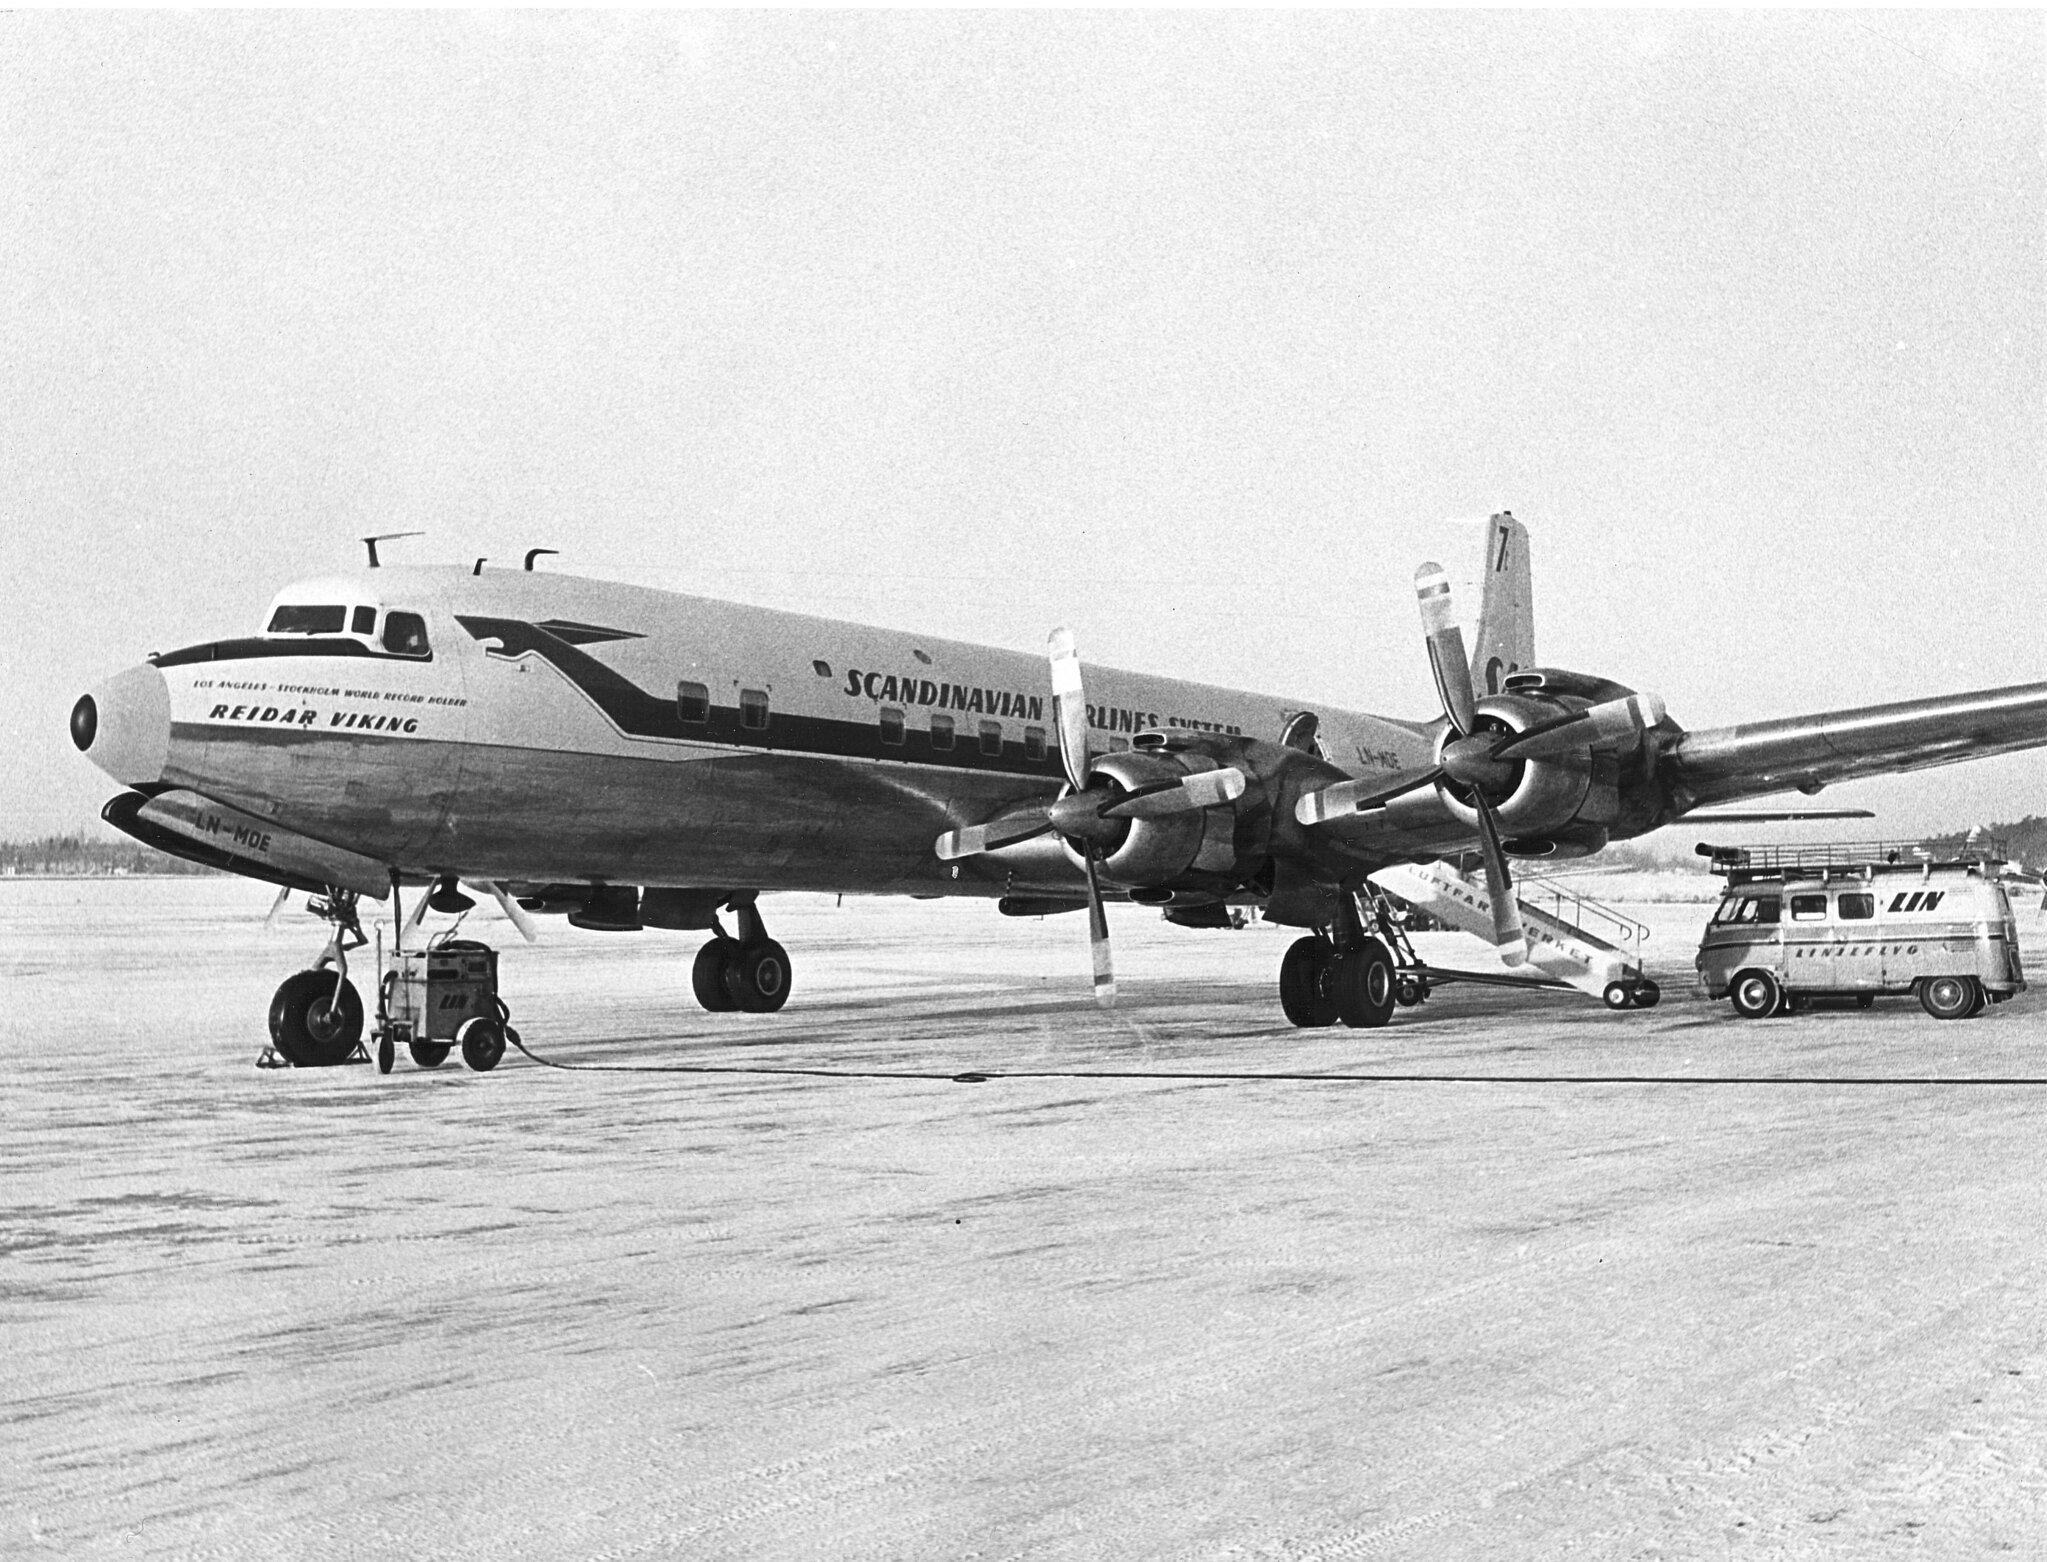 SAS Douglas DC-7